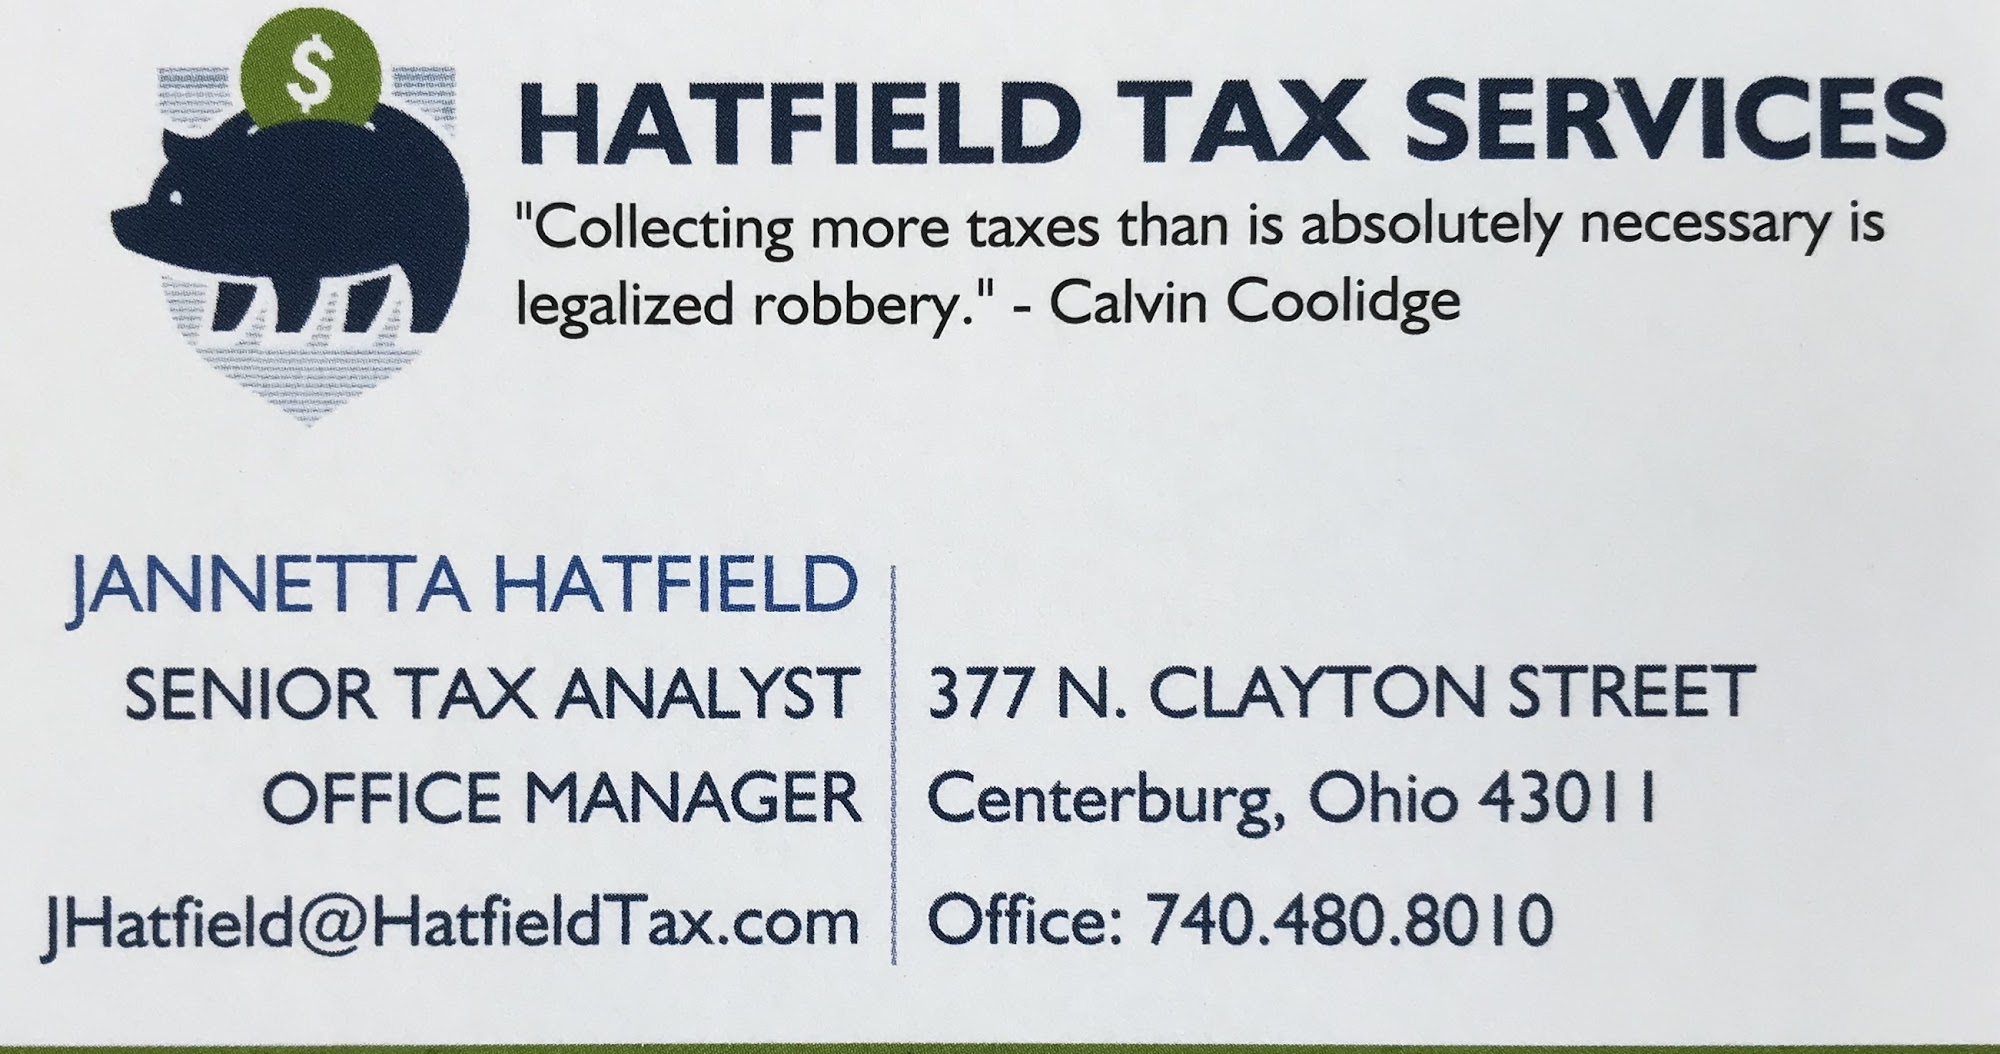 Hatfield Tax Services 377 N Clayton St, Centerburg Ohio 43011